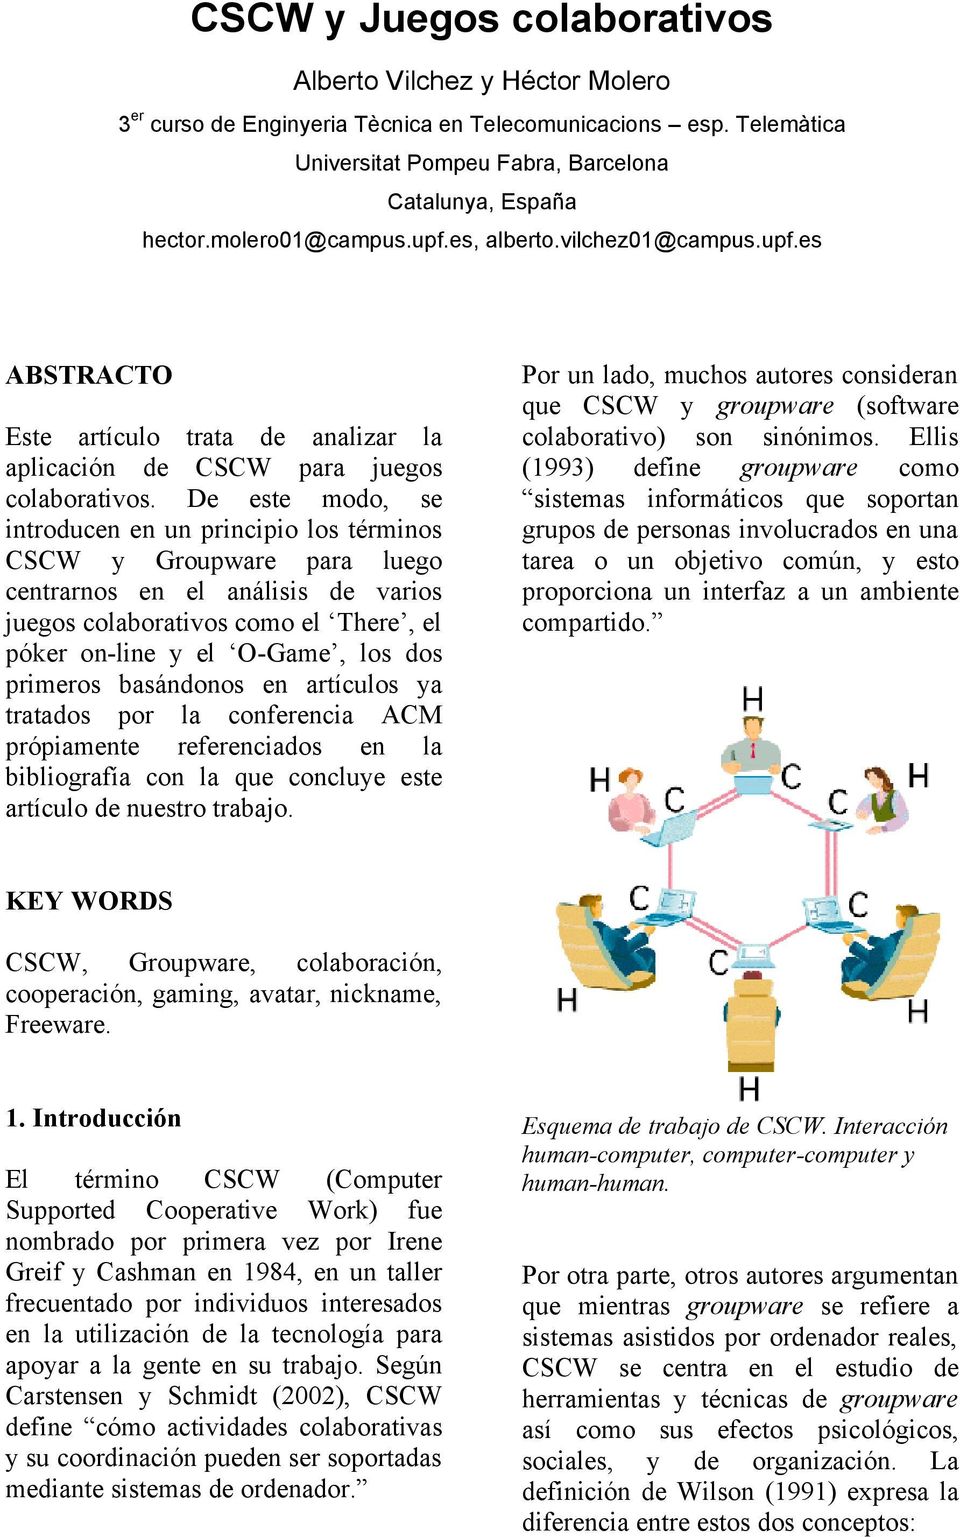 De este modo, se introducen en un principio los términos CSCW y Groupware para luego centrarnos en el análisis de varios juegos colaborativos como el There, el póker on-line y el O-Game, los dos